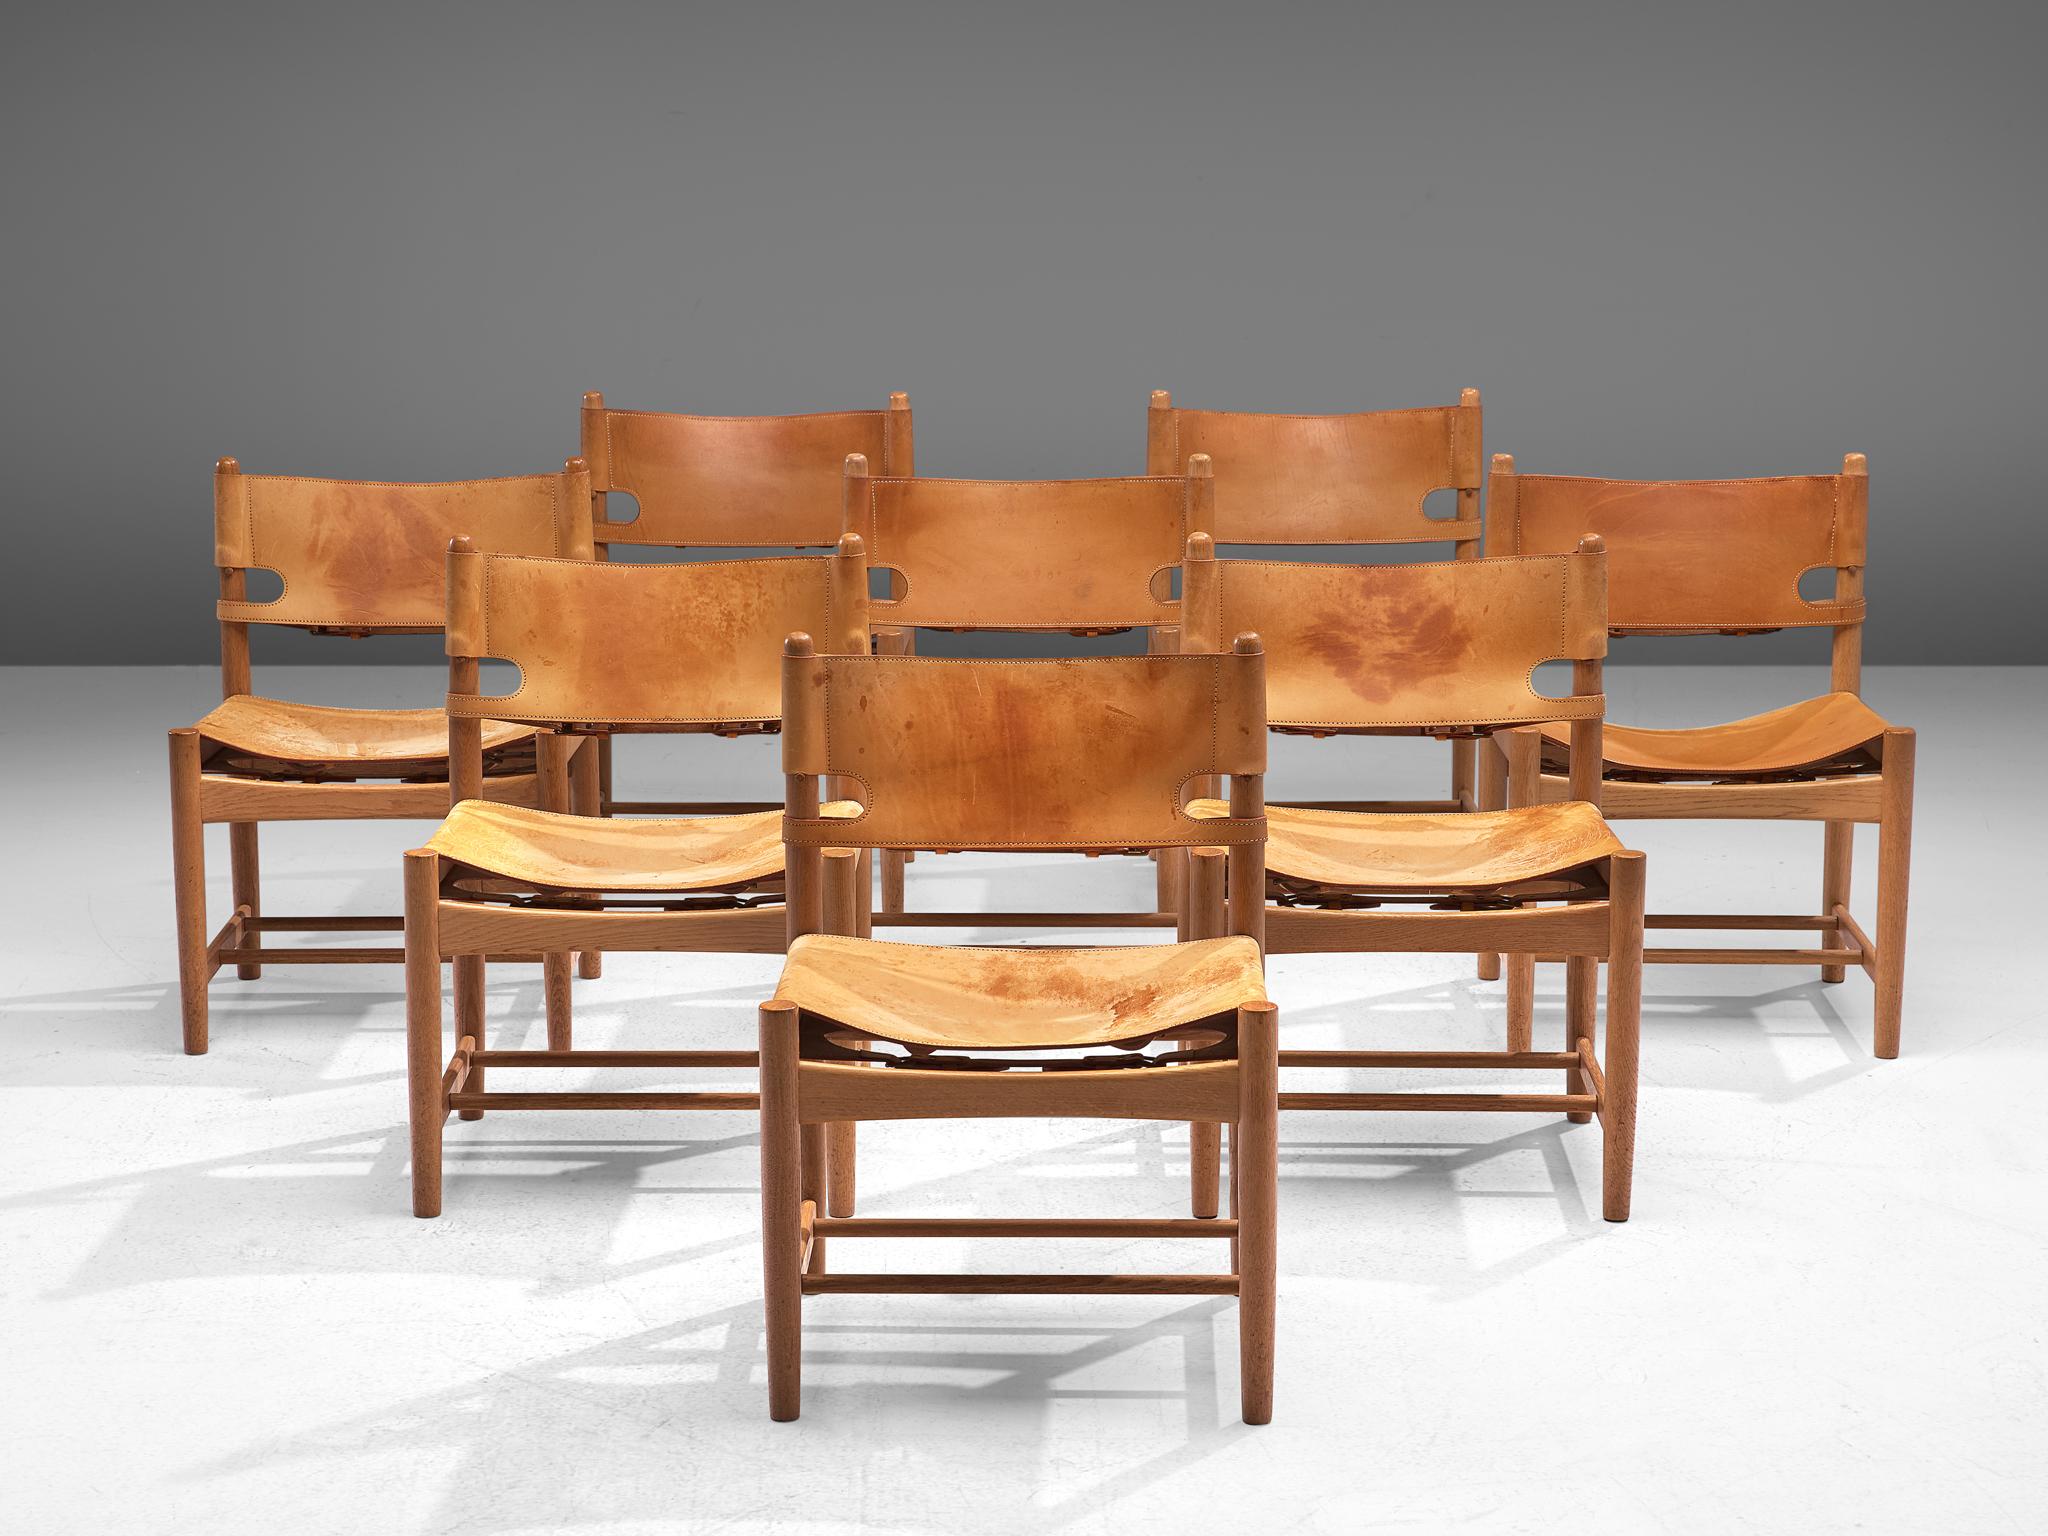 Børge Mogensen für Fredericia Stolefabrik, 8 Stühle Modell 3237, aus Eiche und Leder, Dänemark, 1964.

Satz von acht Stühlen aus massiver Eiche. Diese Stühle erinnern an die klassischen klappbaren 